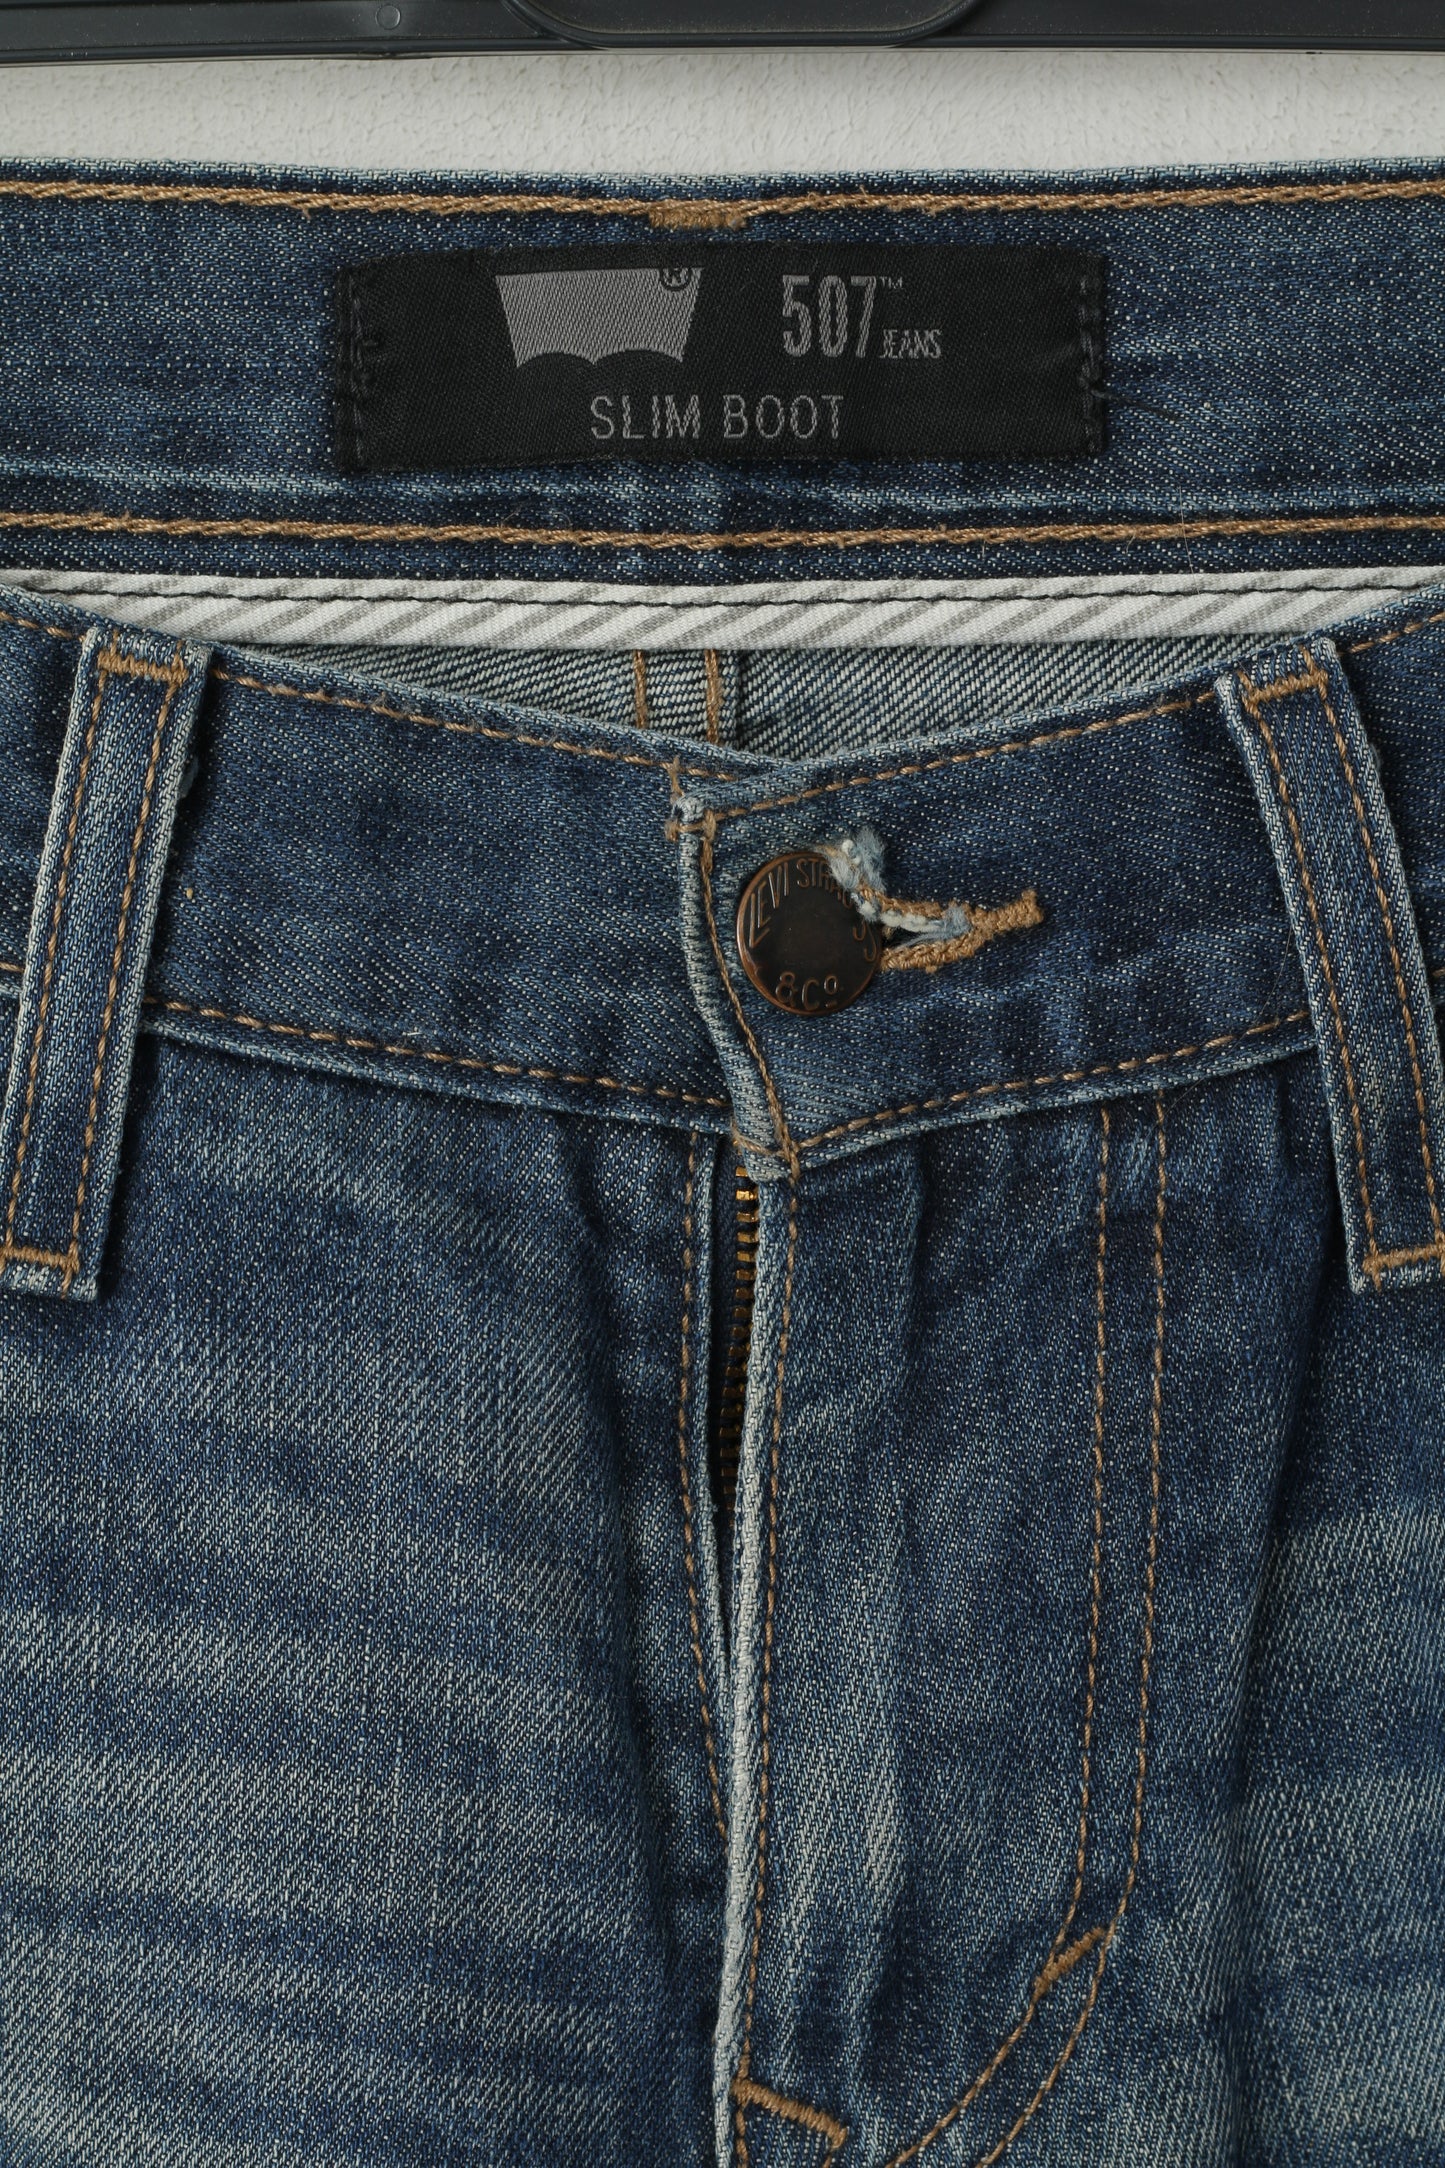 Levi's Men W 30 L 32 Jeans Trousers Mid Blue 507 Slim Boot Cotton Classic